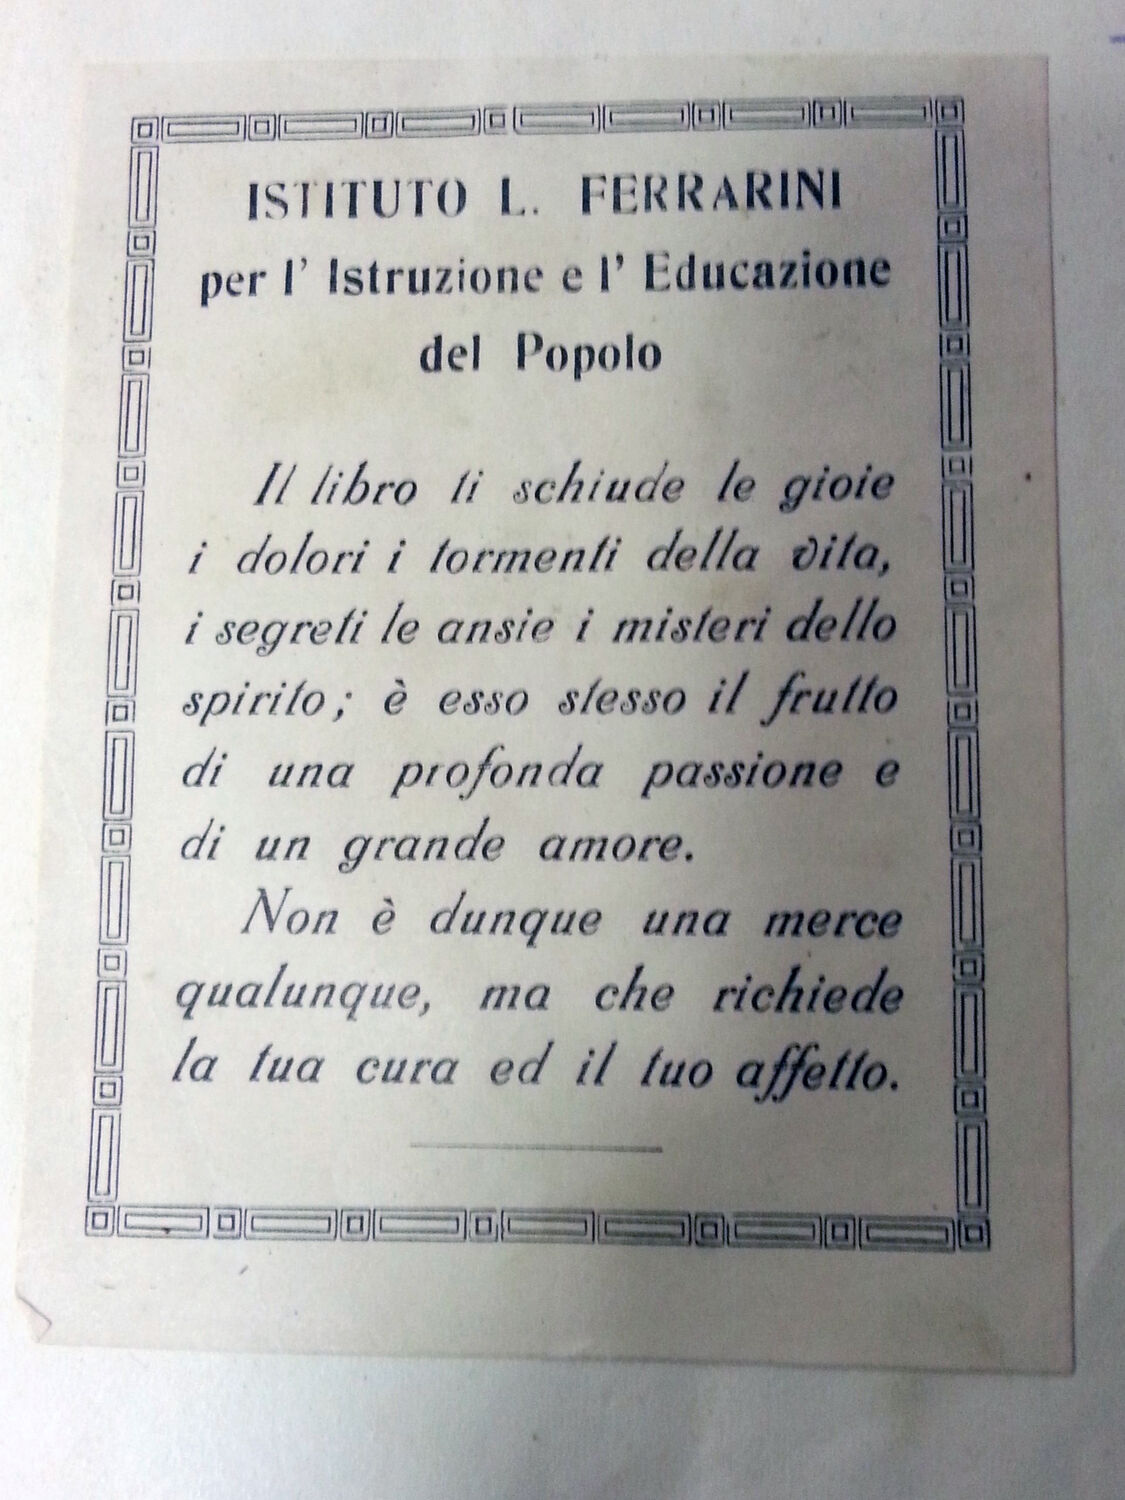 Stampa apposta su alcuni libri già Ferrarini, ora presso l'Istituto storico.